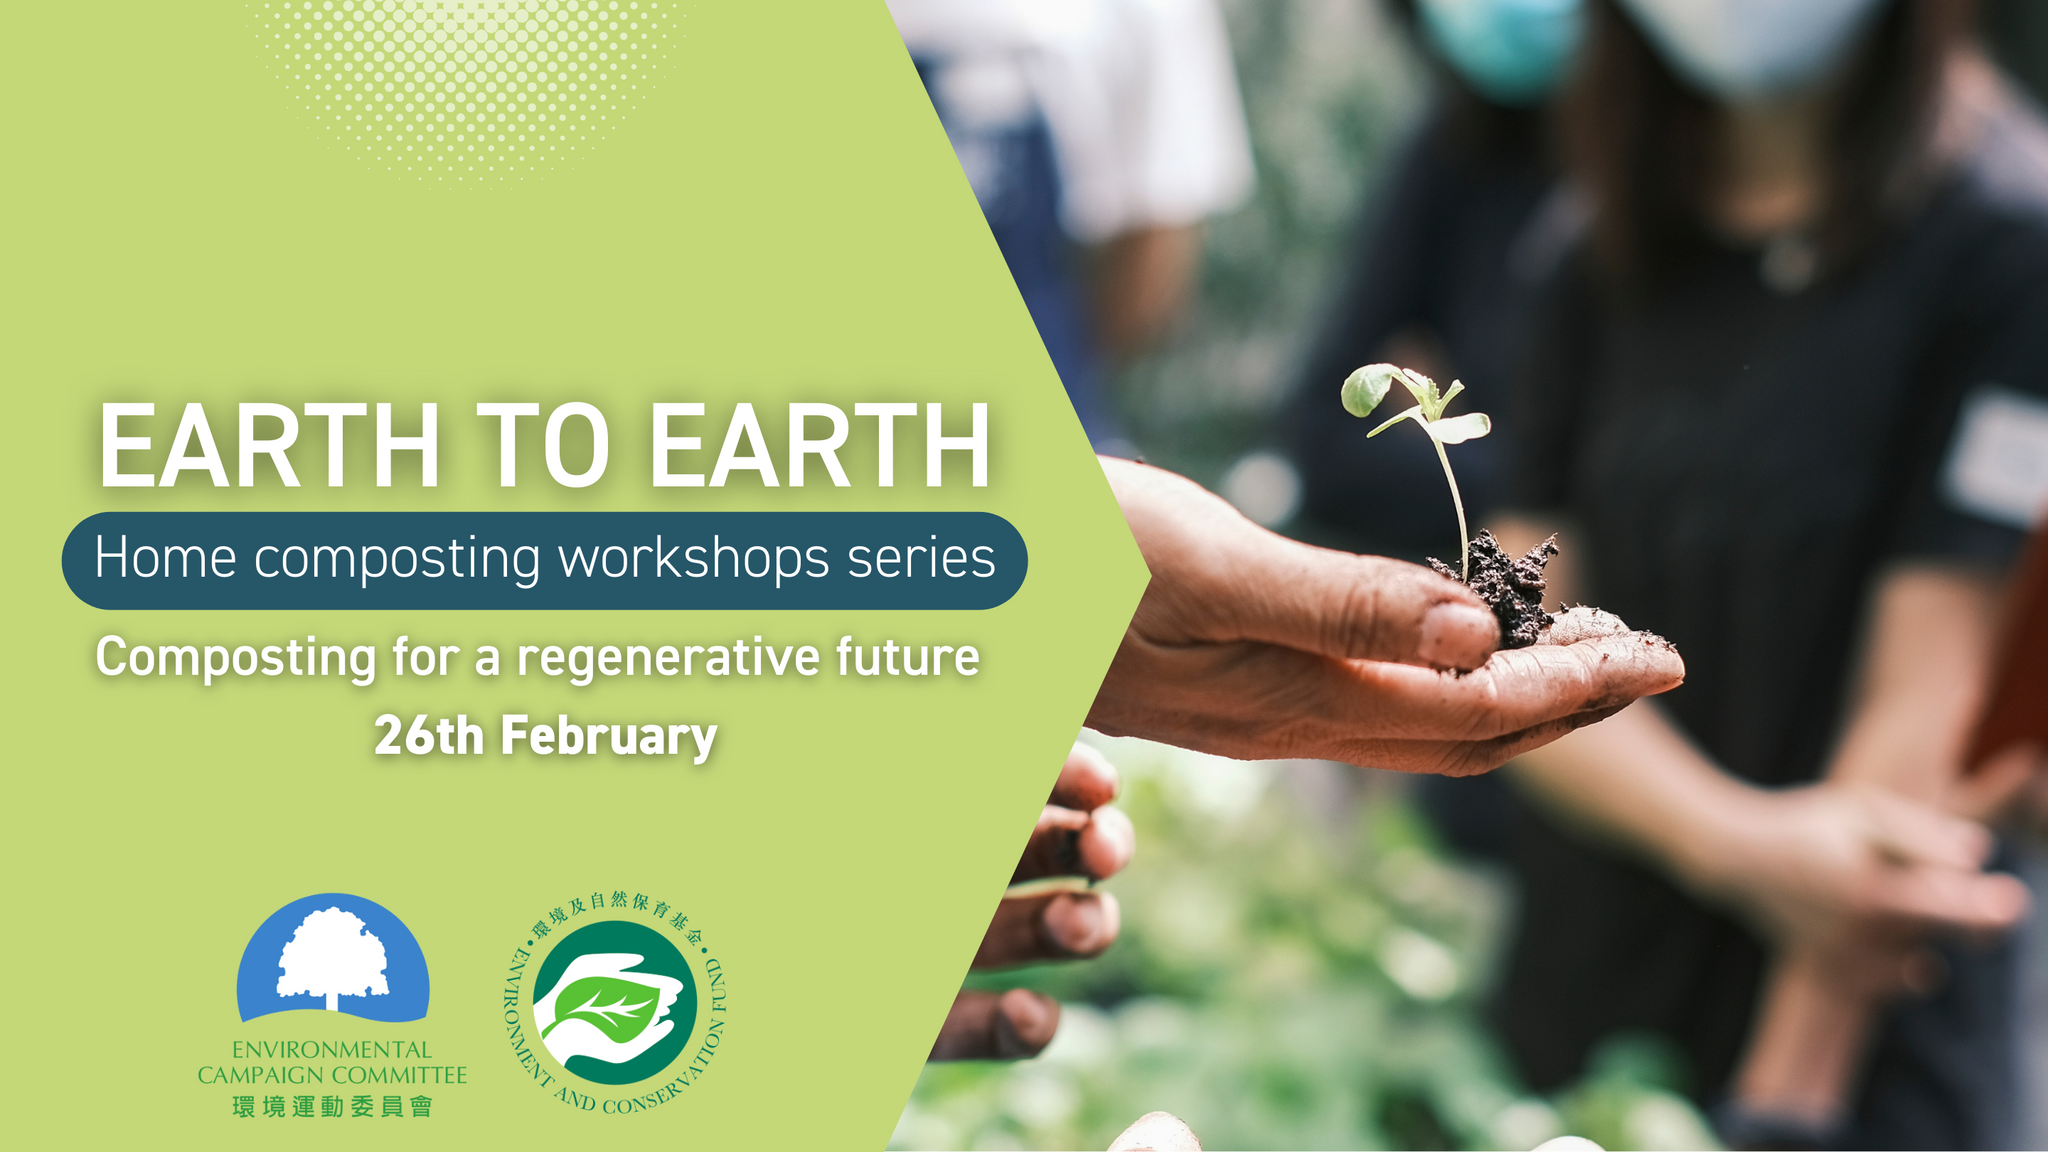 Workshop 1 - Composting for a regenerative future